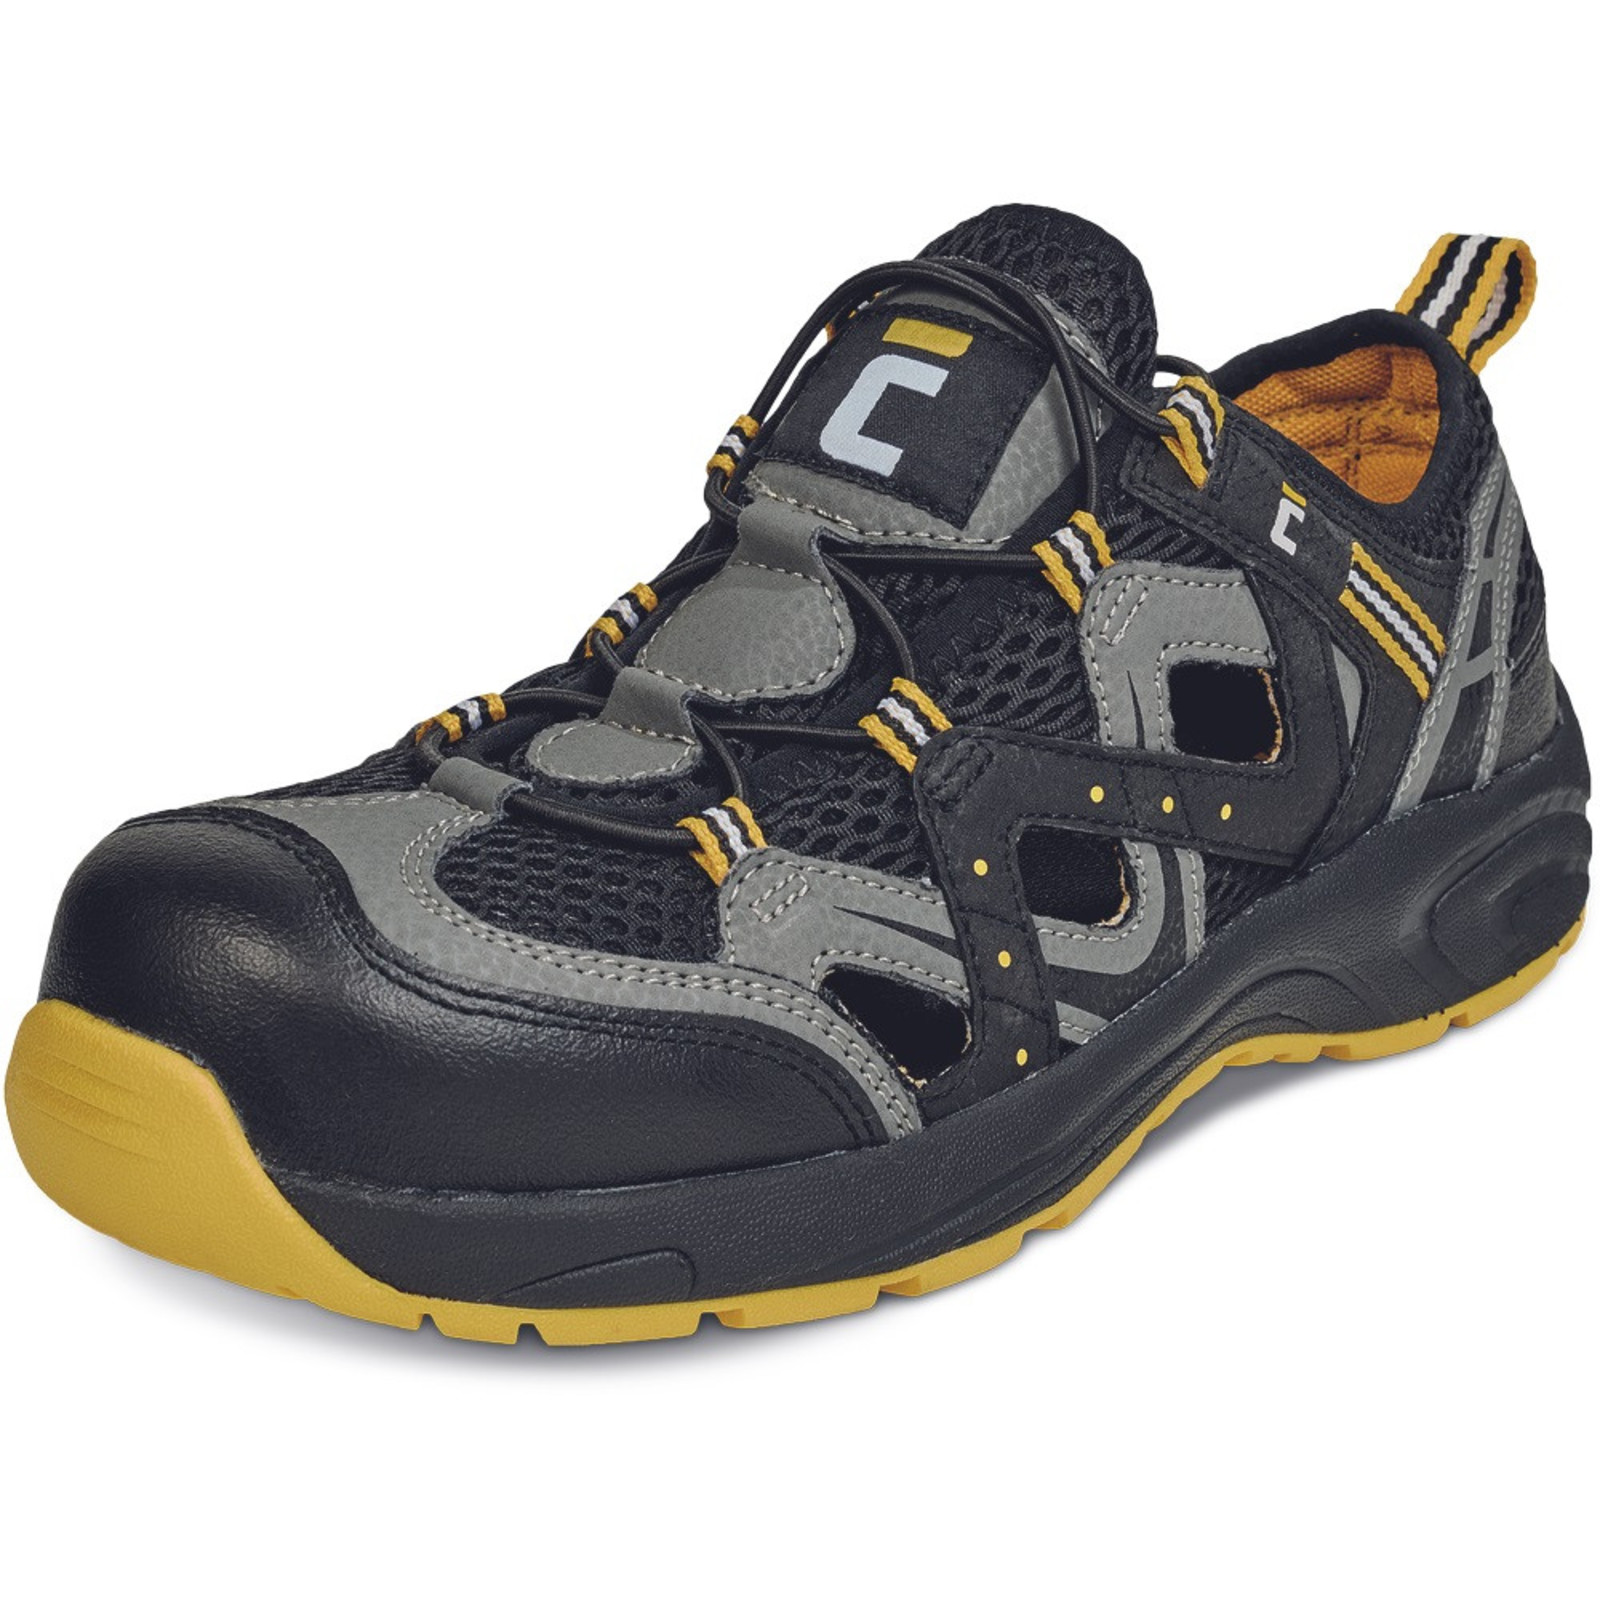 Pracovné sandále Cerva Henford O1 SRC - veľkosť: 44, farba: čierna/žltá